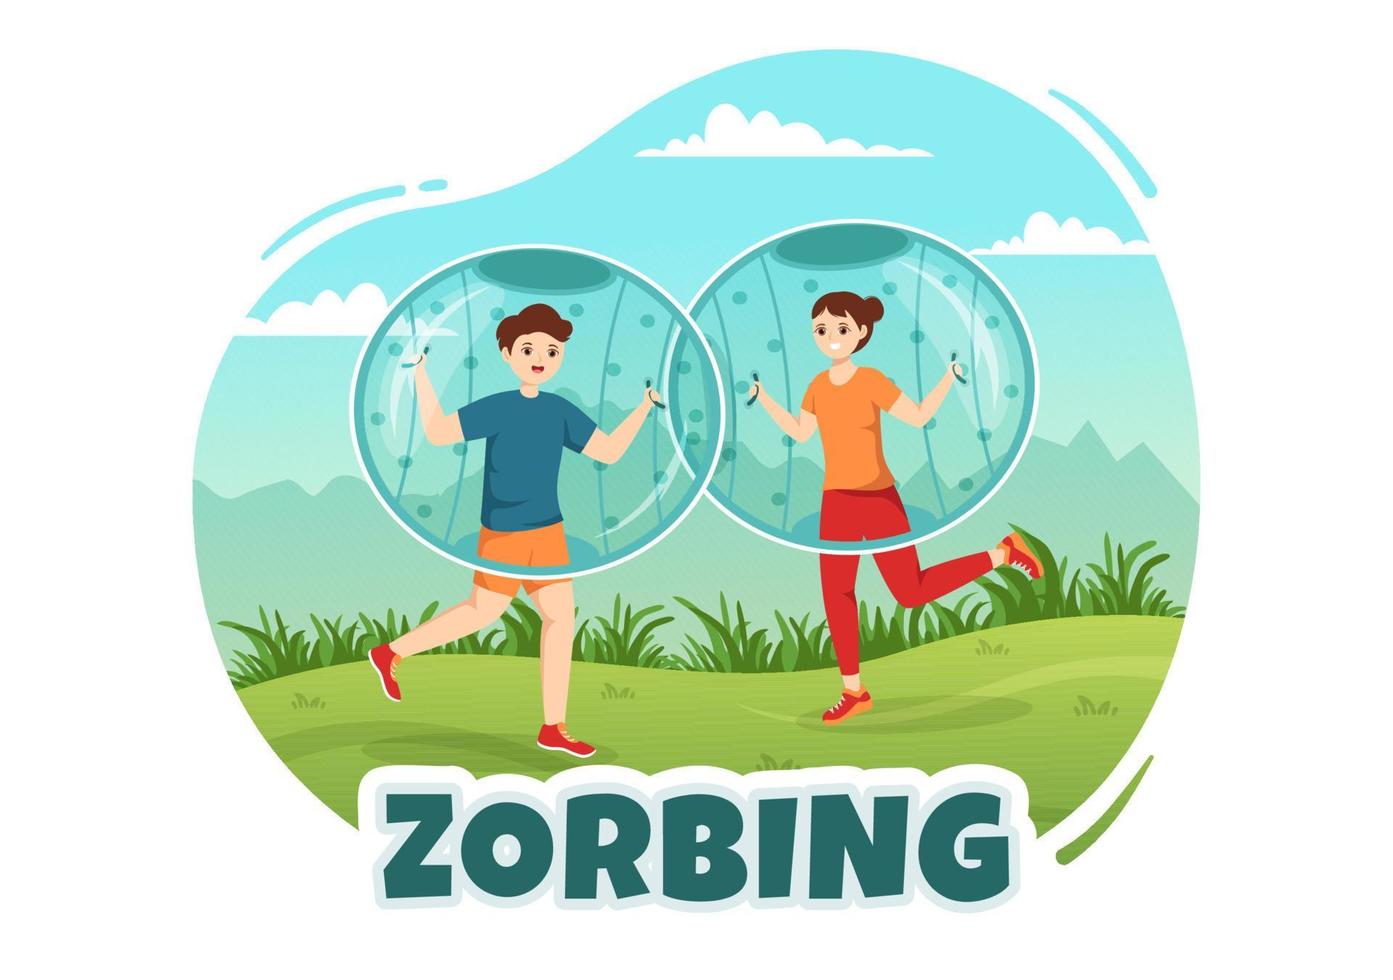 ilustración de zorbing con personas jugando burbujas en un campo verde o piscina para banner web o página de destino en plantillas planas dibujadas a mano de dibujos animados vector